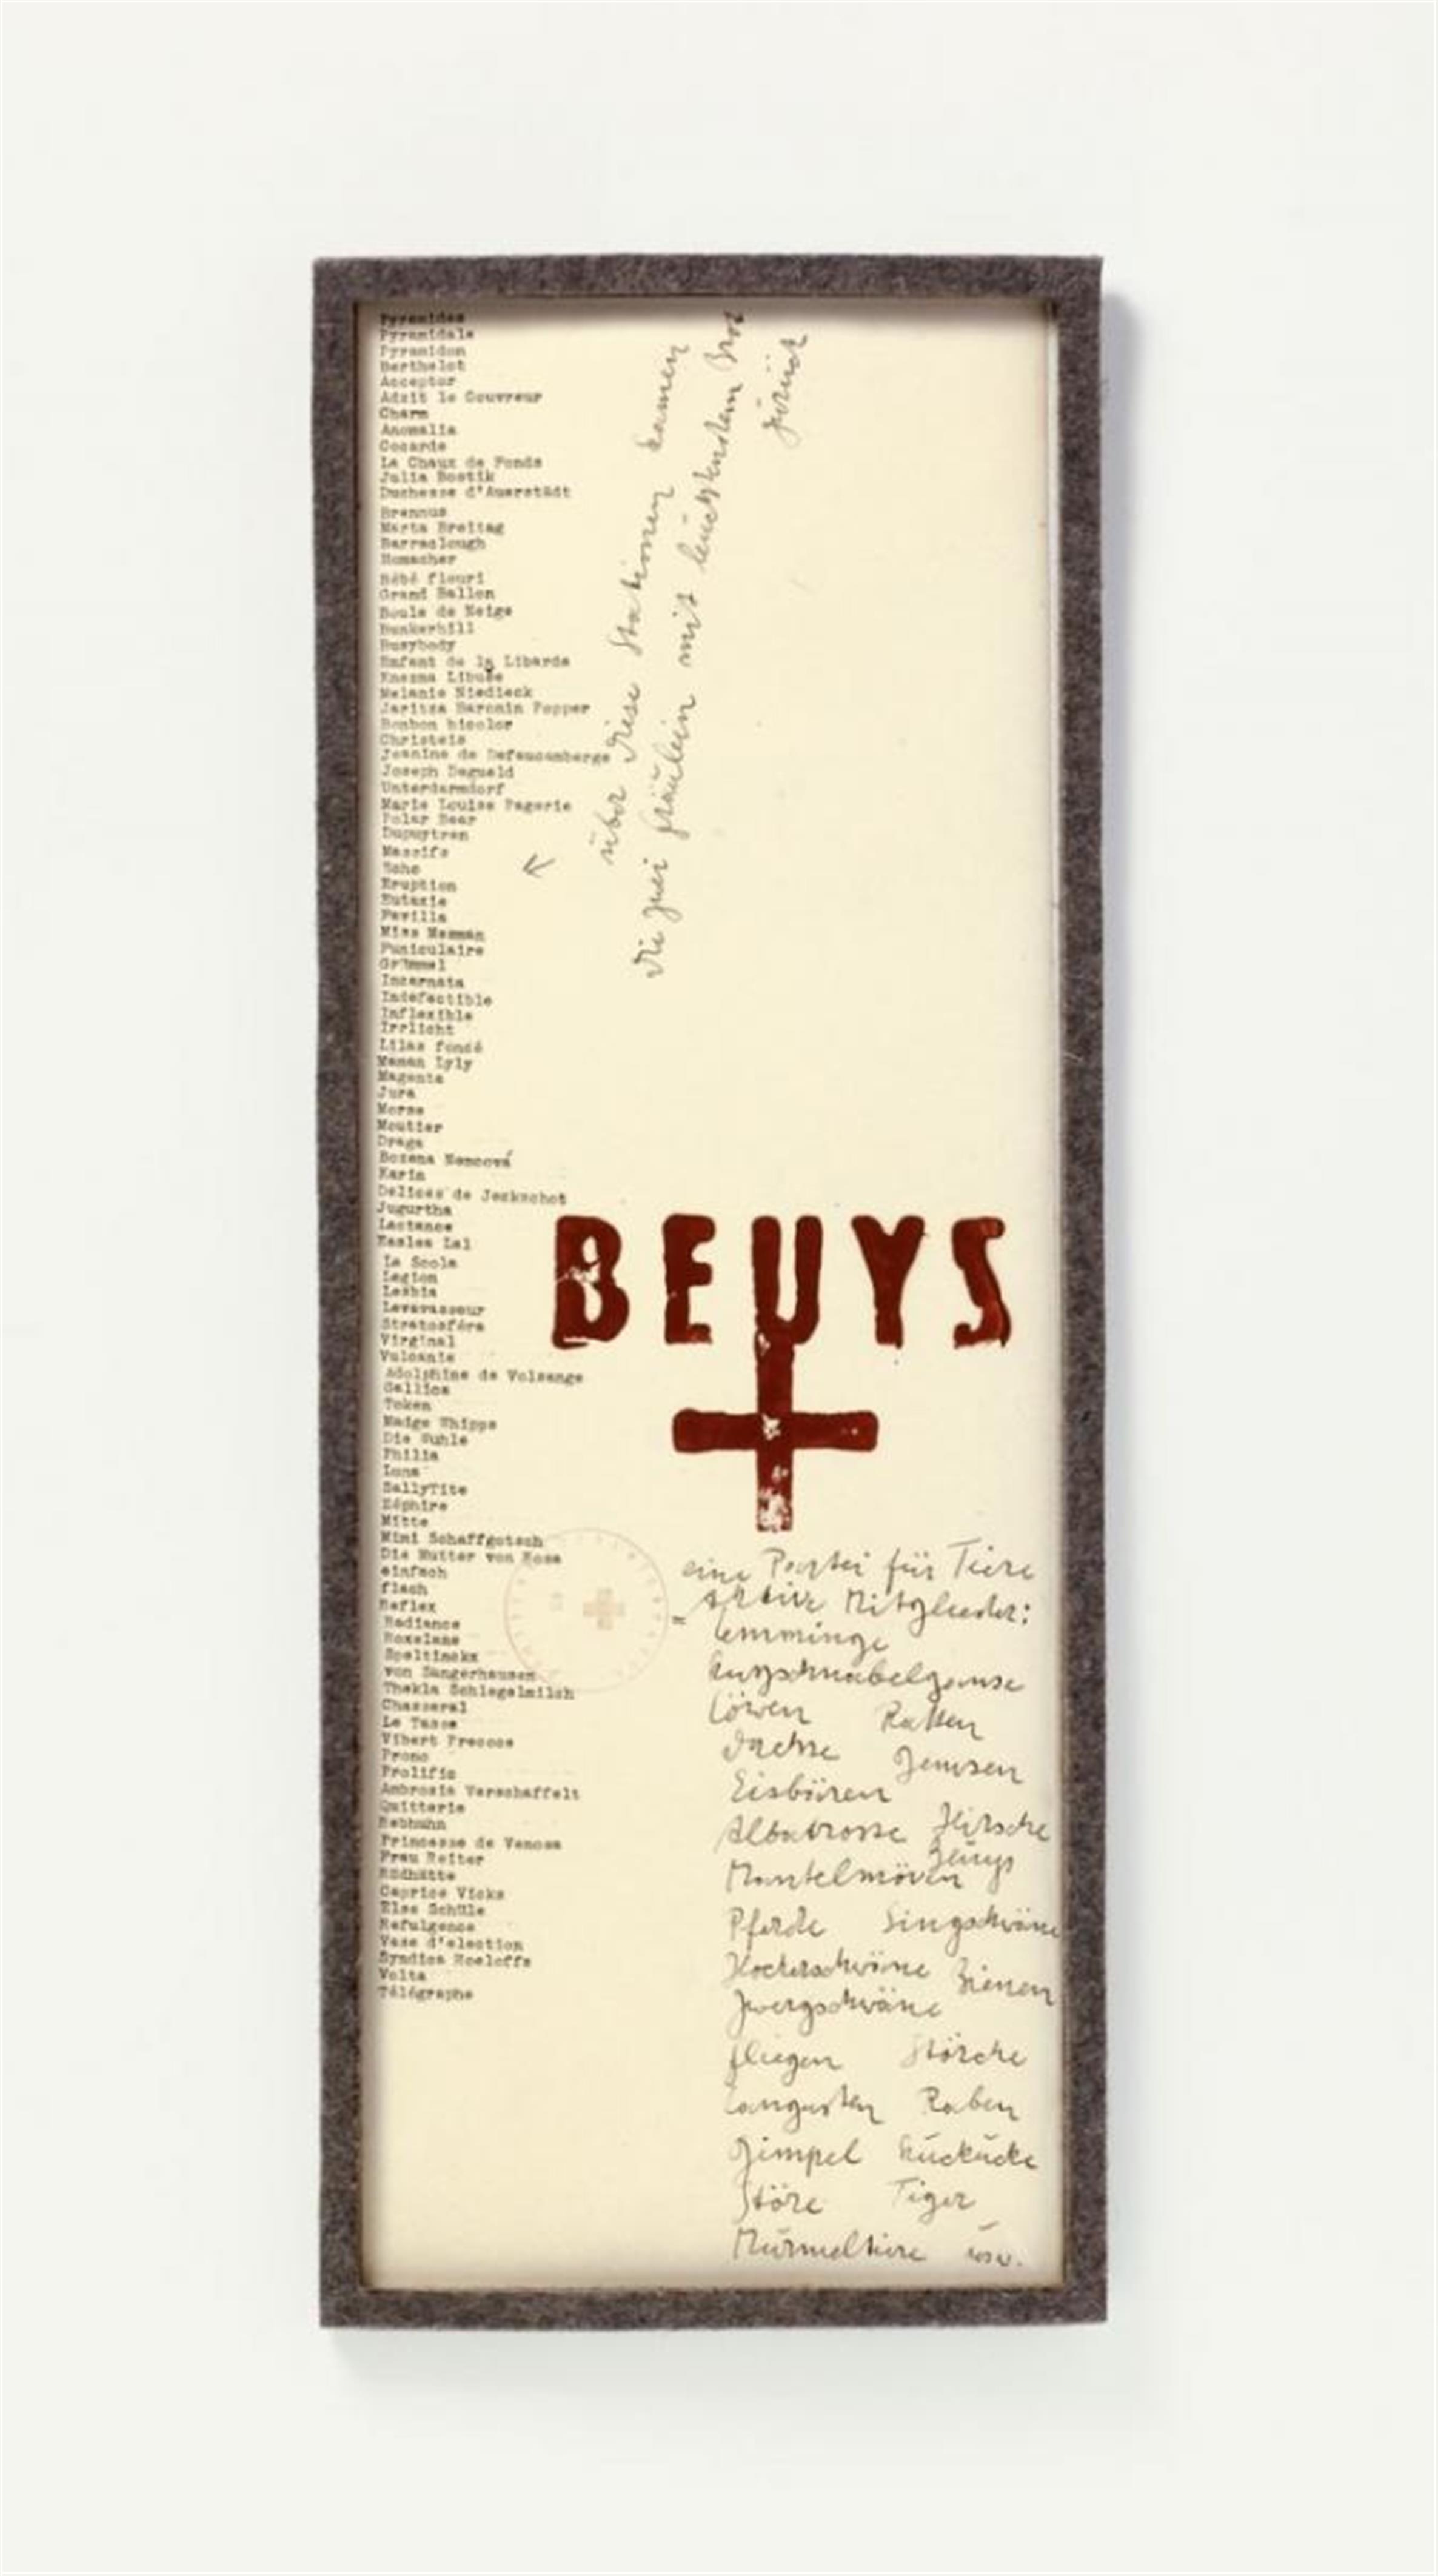 Joseph Beuys - Eine Partei für Tiere (A Party for Animals) - image-1